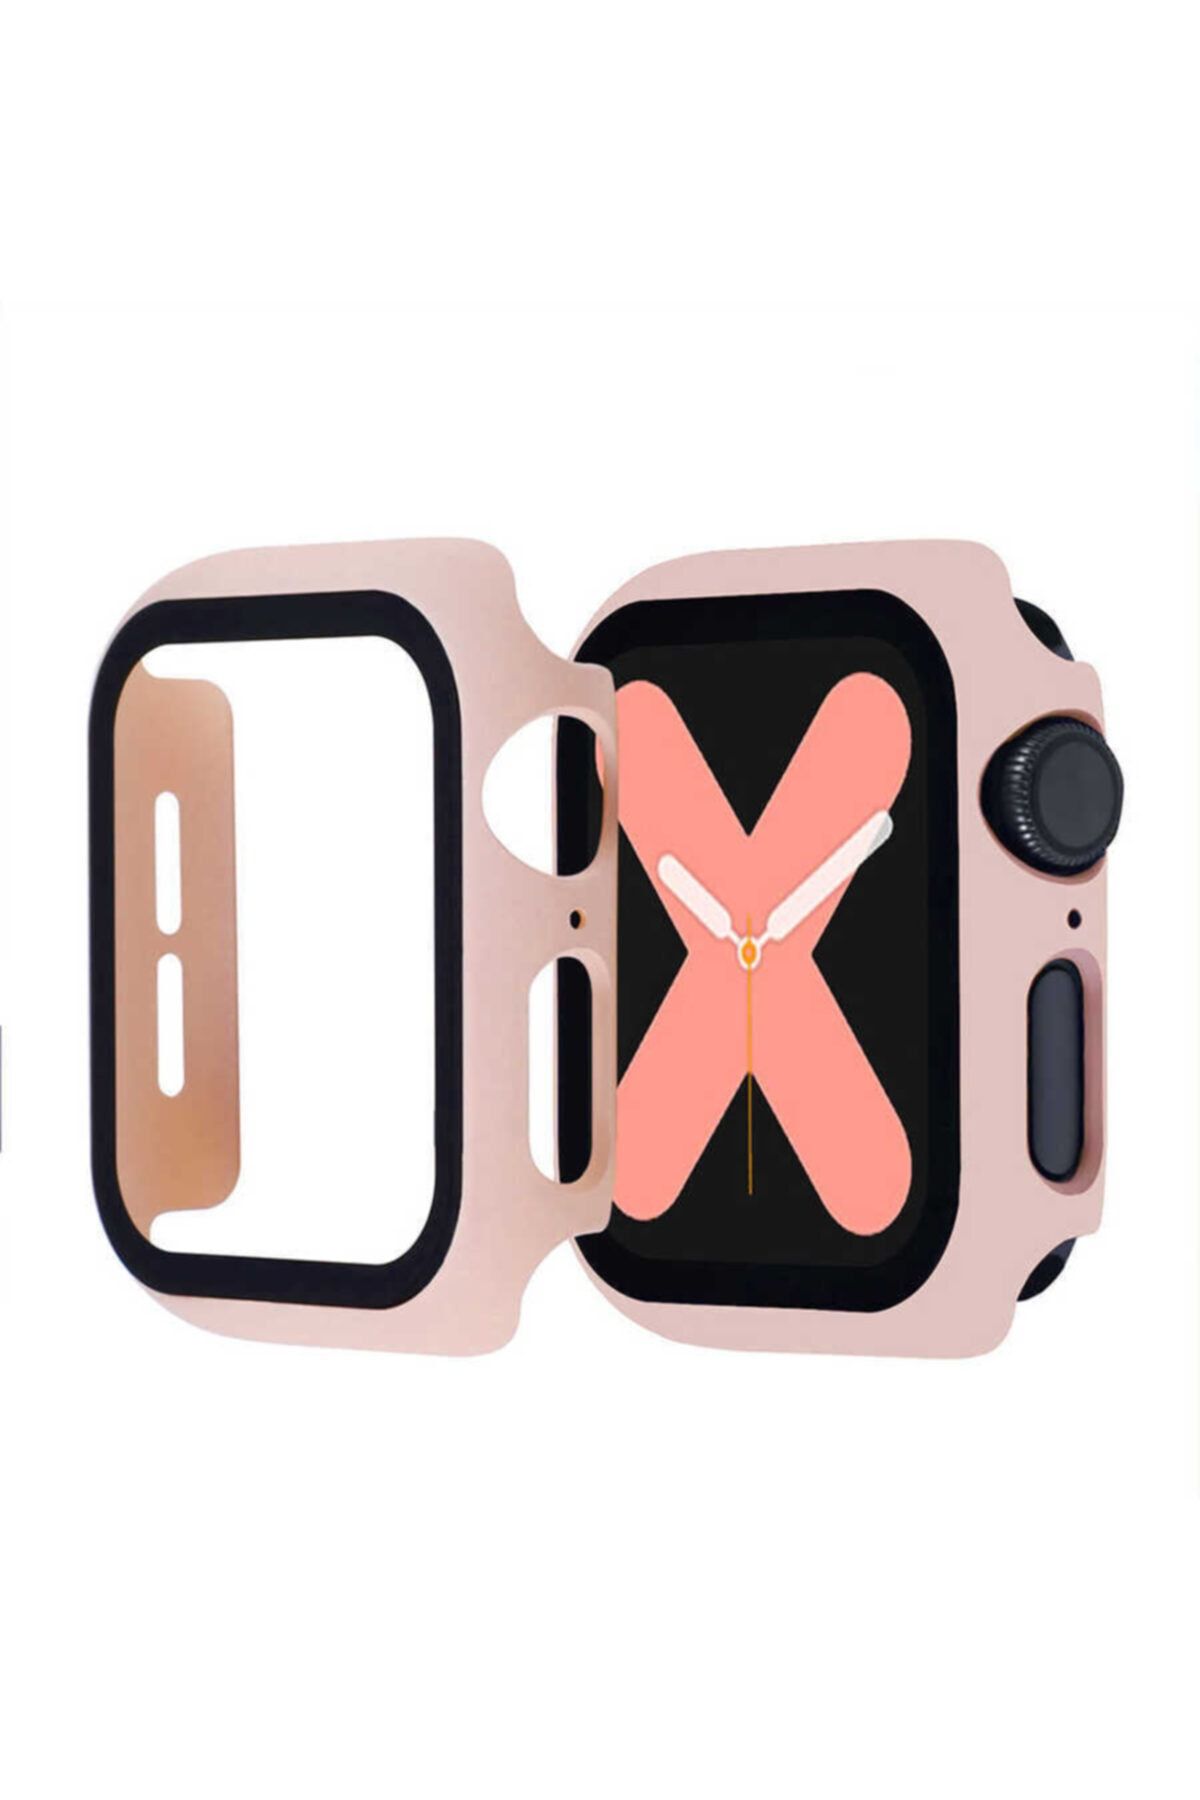 Nezih Case Apple Watch Seri 2 3 4 5 6 Se 44mm Kasa Ve Ekran Koruyucu 360 Tam Koruma Gard Açık Pembe